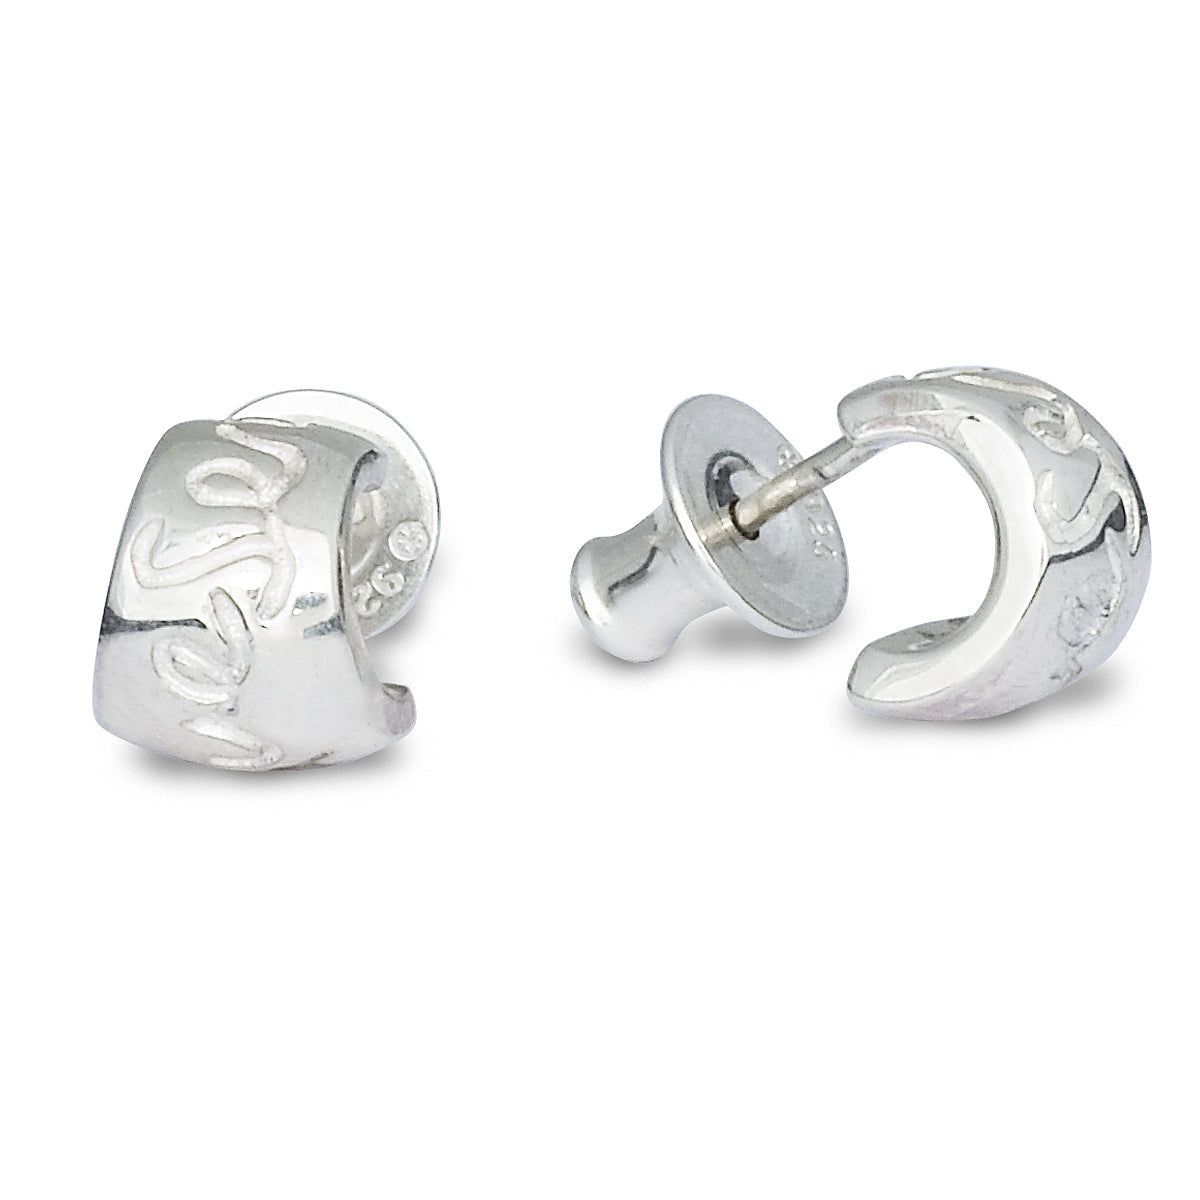 Silver sorry bead jewellery engraved Que Sera stud earrings from Scarlett Jewellery